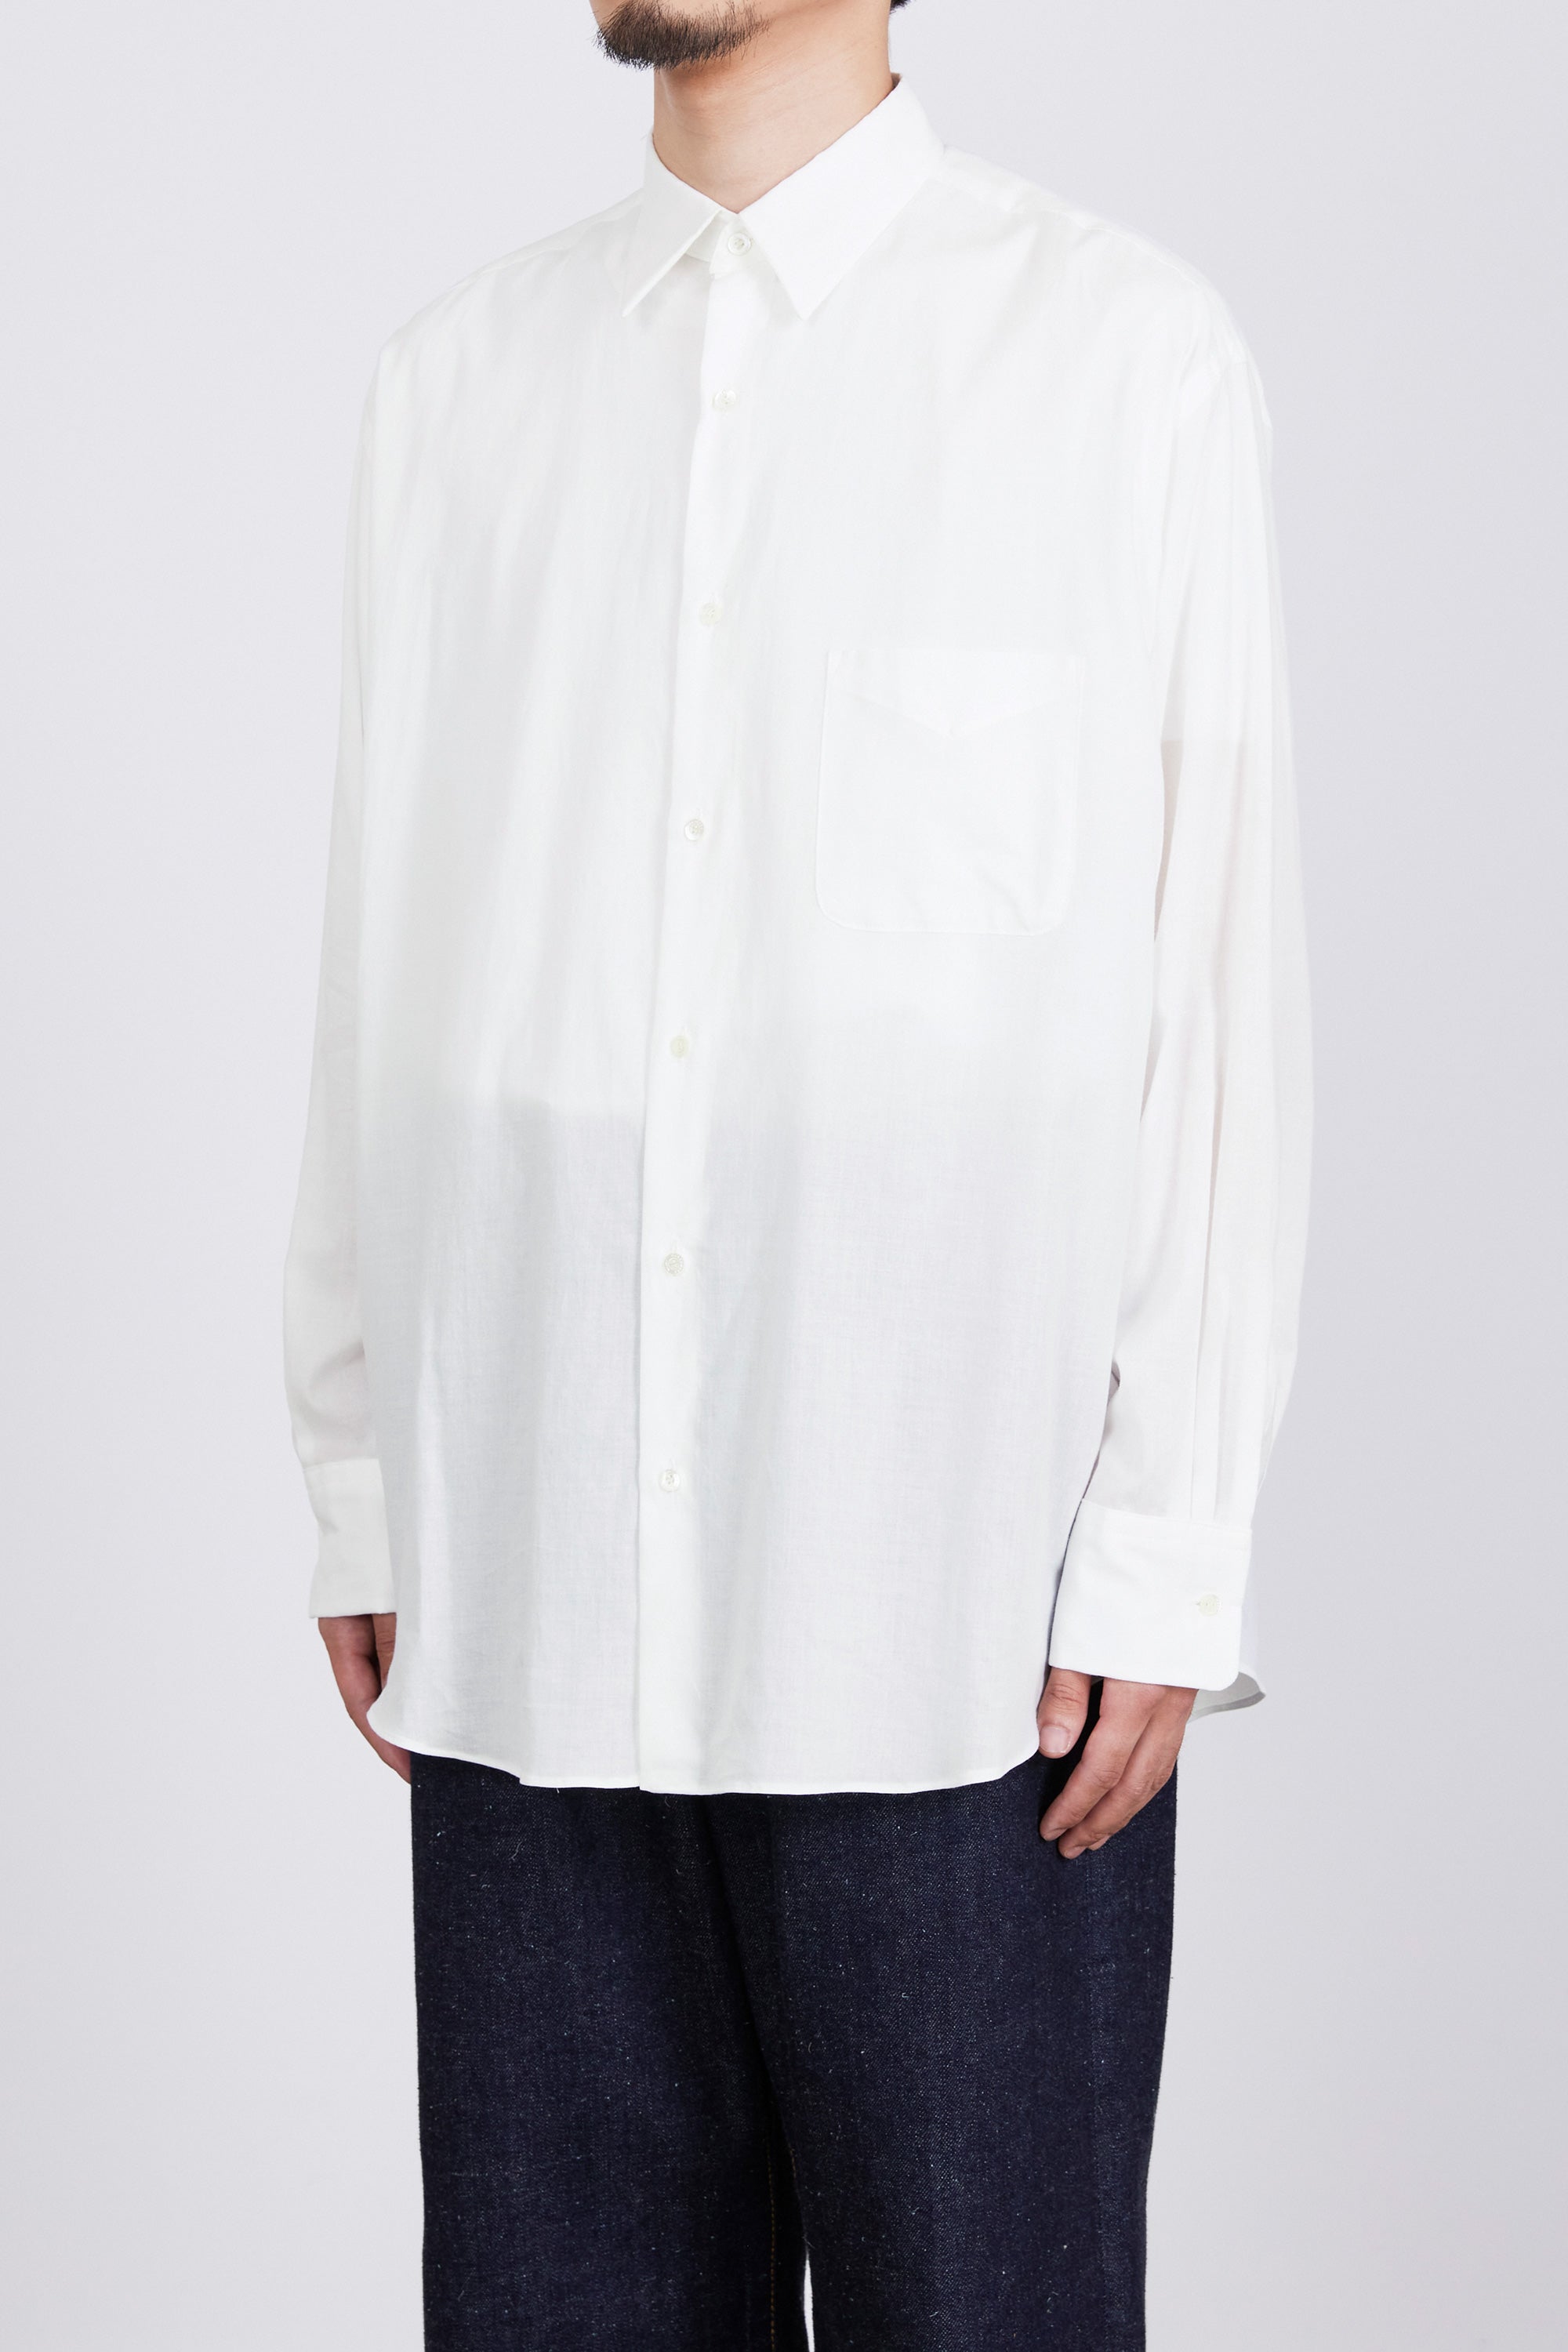 オーガニックペルーピマコットン60/-ローン / コンフォートフィットシャツ, White